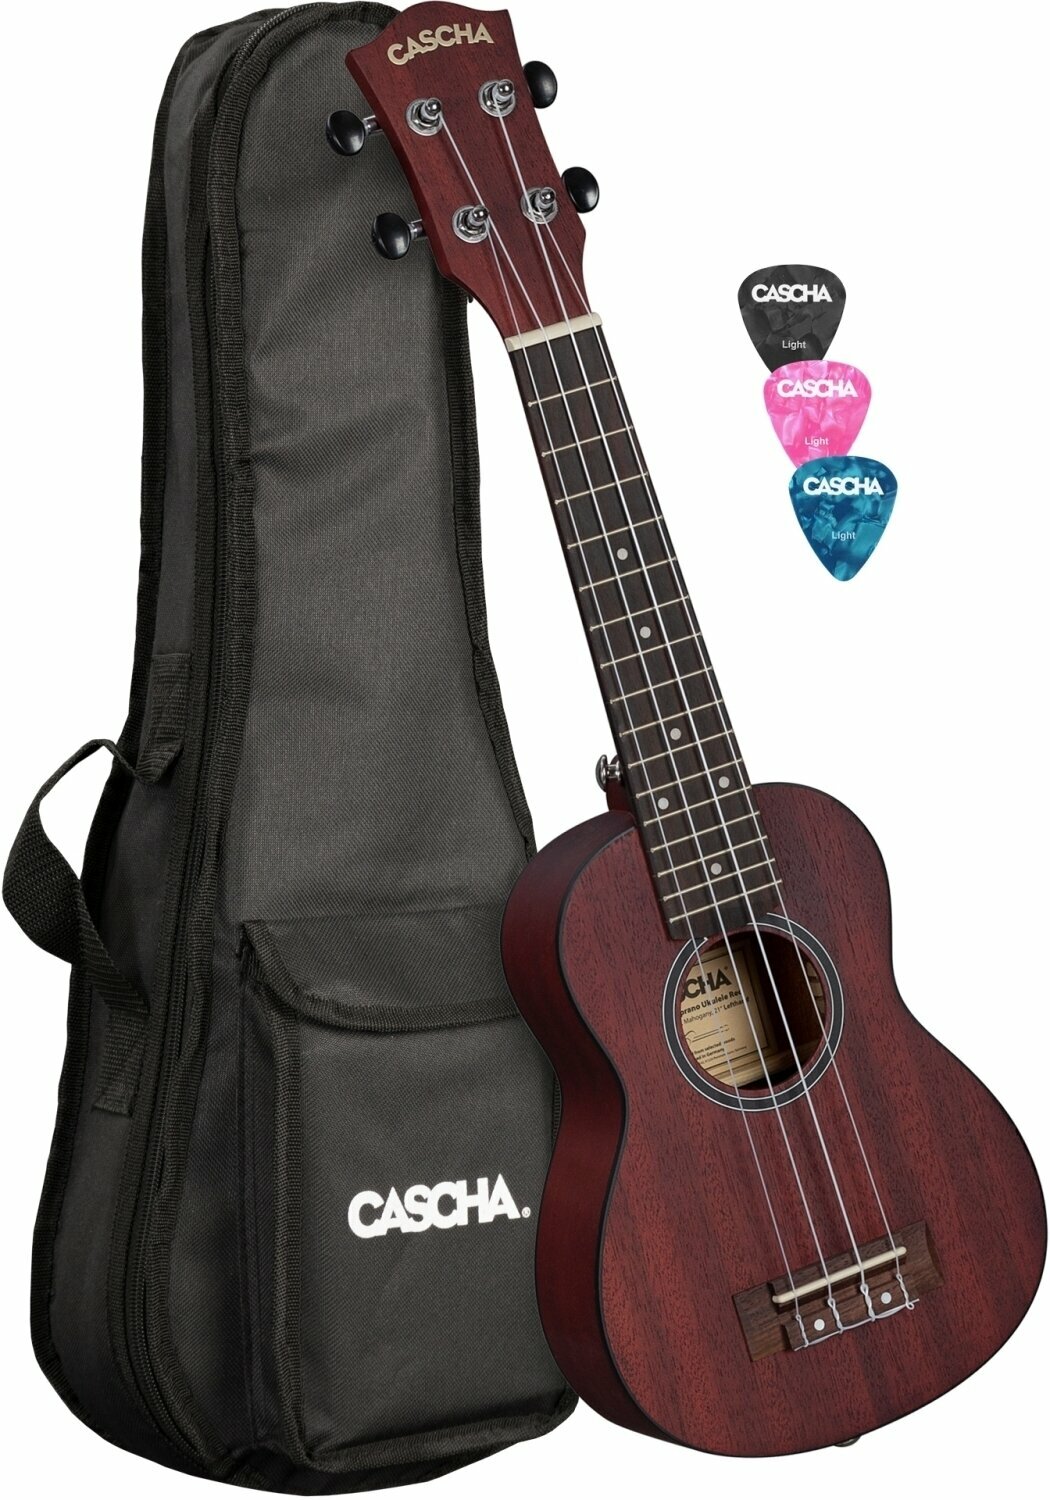 Soprano ukulele Cascha HH 2263L Soprano ukulele Red